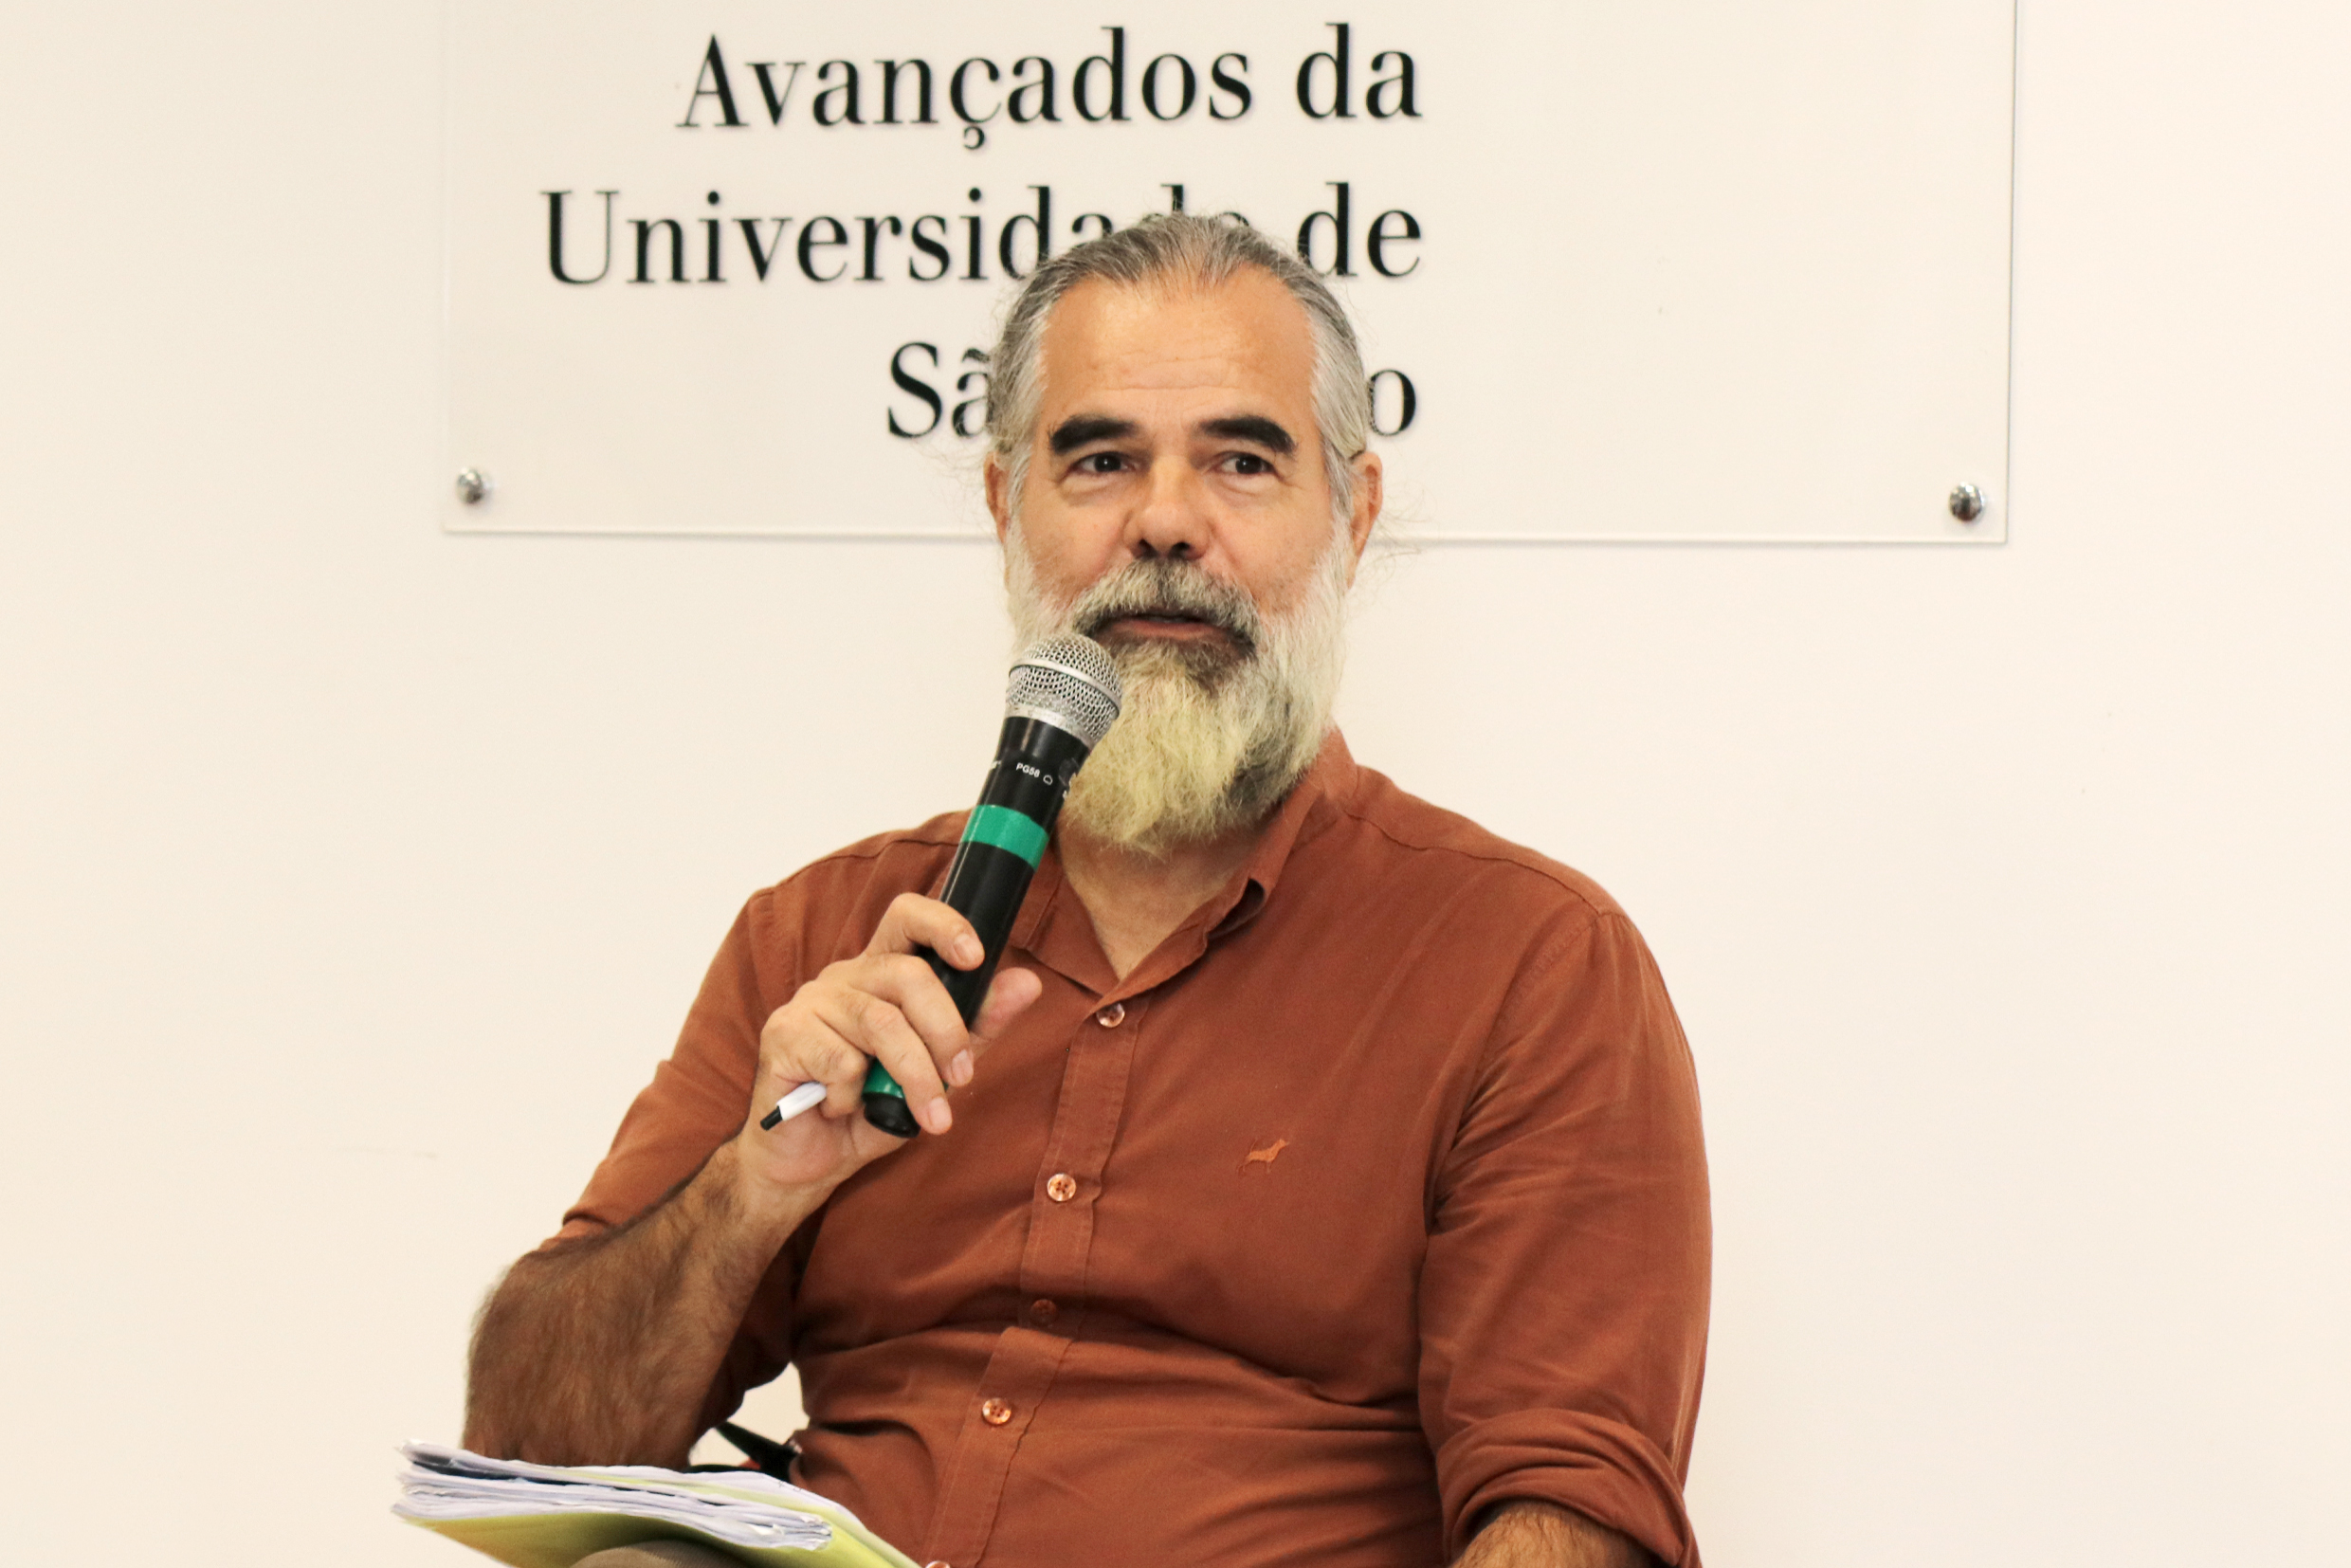 Carlos Alberto Cioce Sampaio 